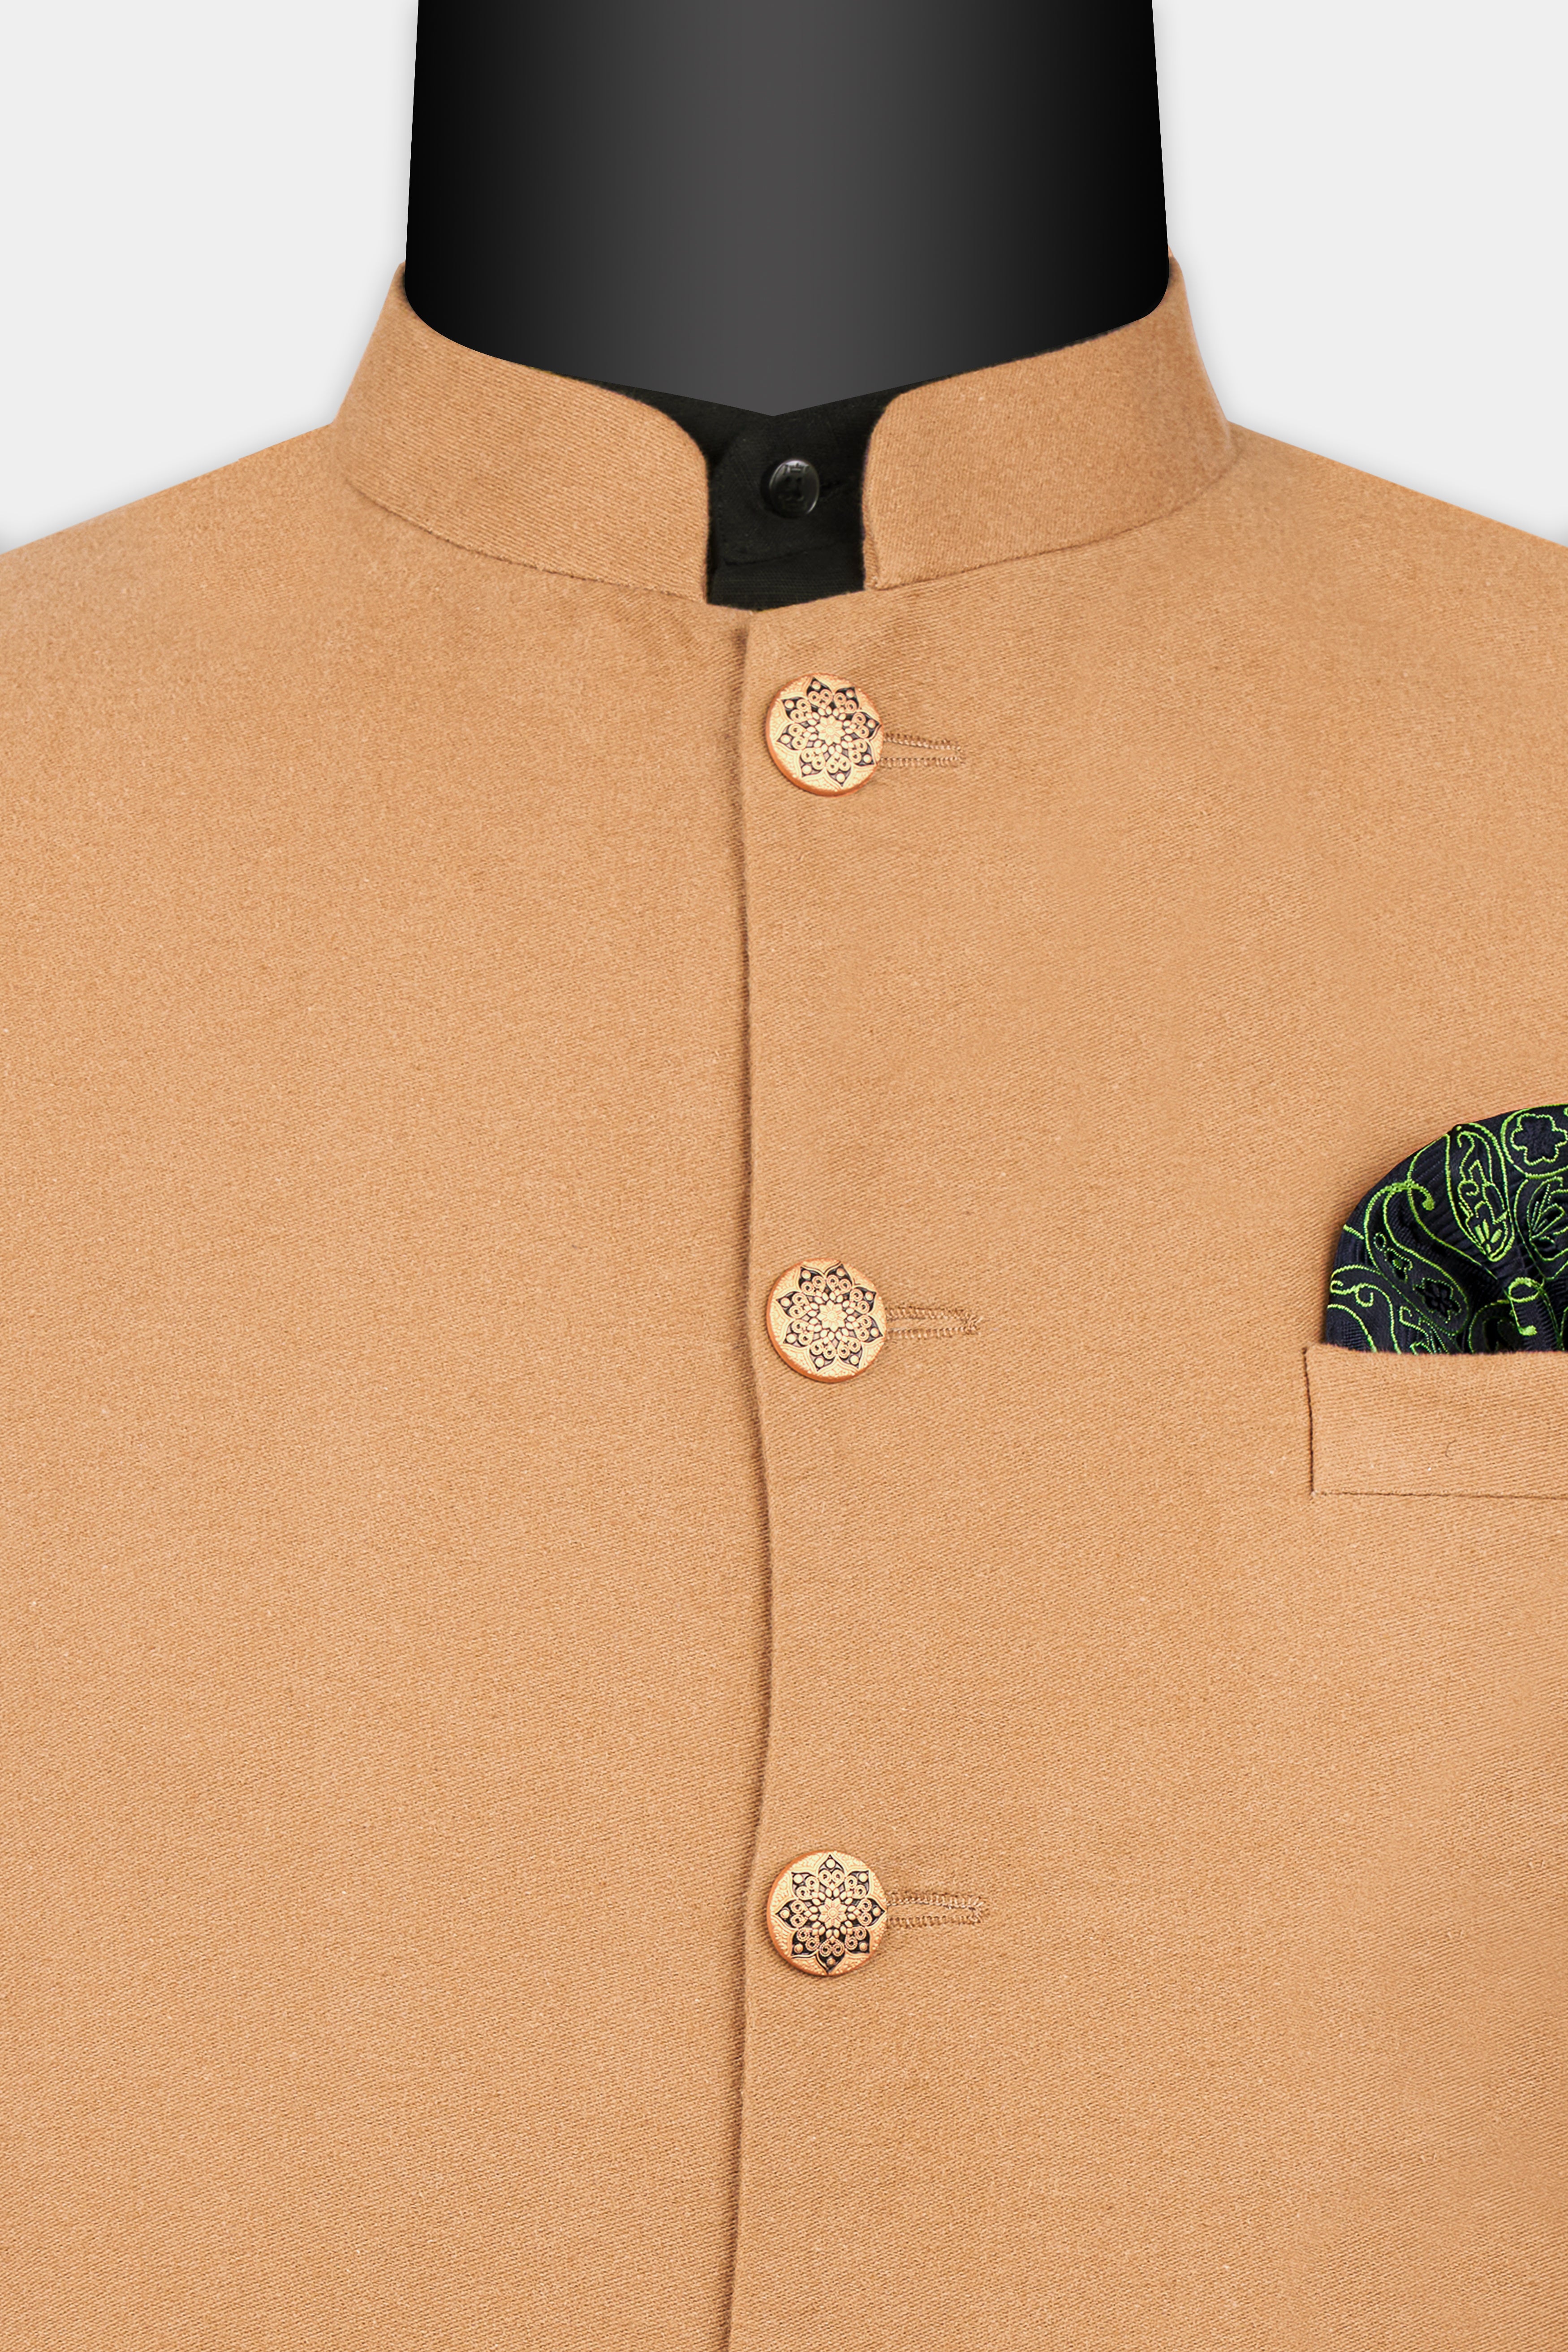 Antique Orange Corduroy Premium Cotton Nehru Jacket